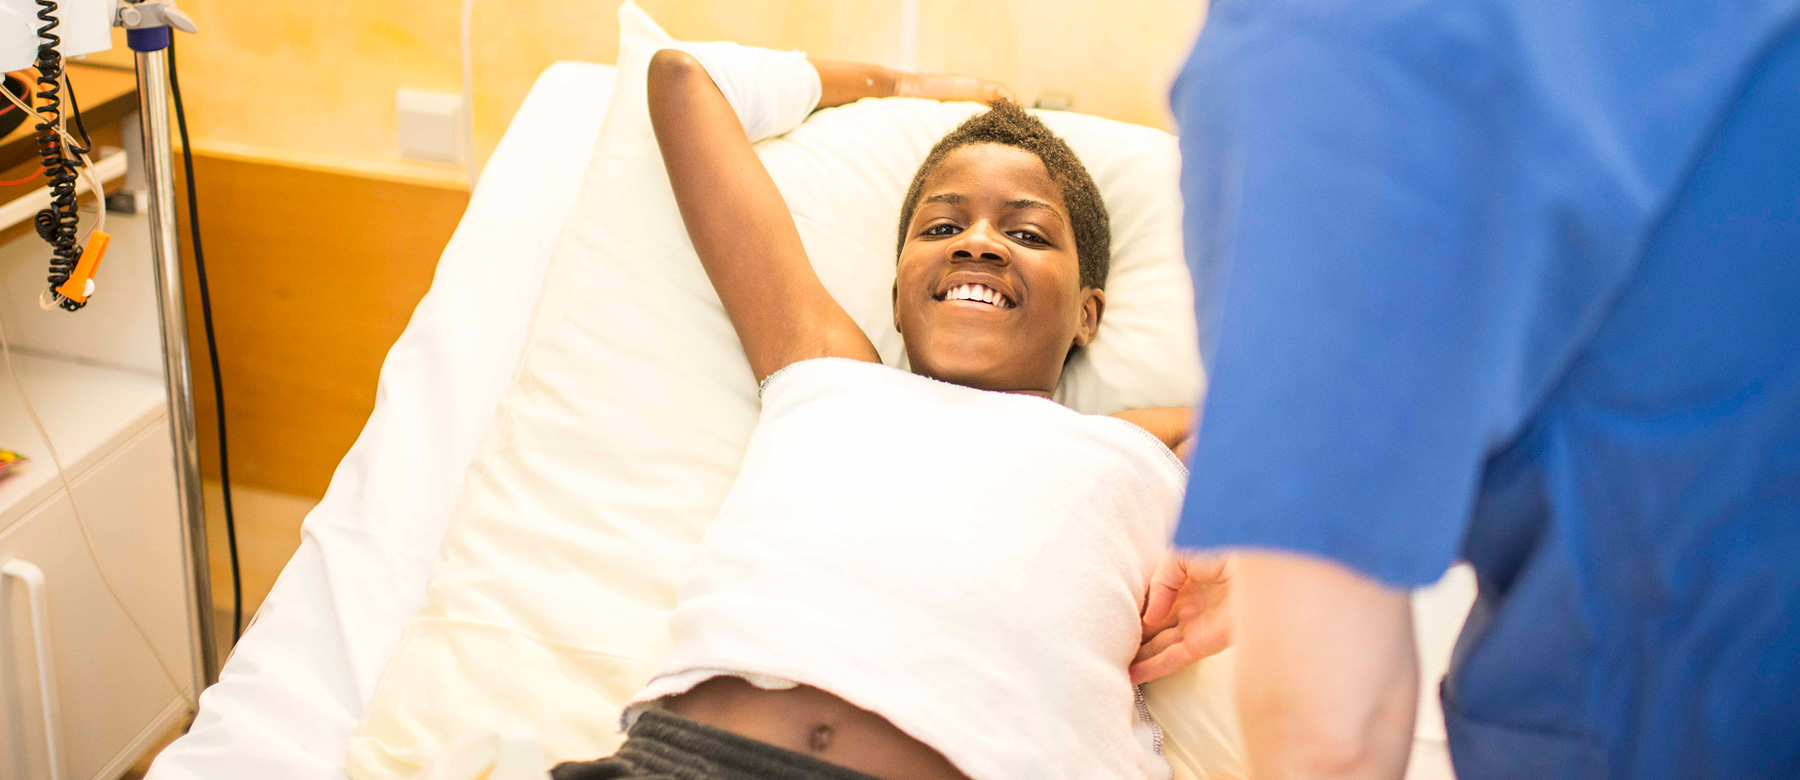 Patient der Abteilung für Kinder- und Jugendmedizin erhält einen Brustwickel und lacht dabei in die Kamera.